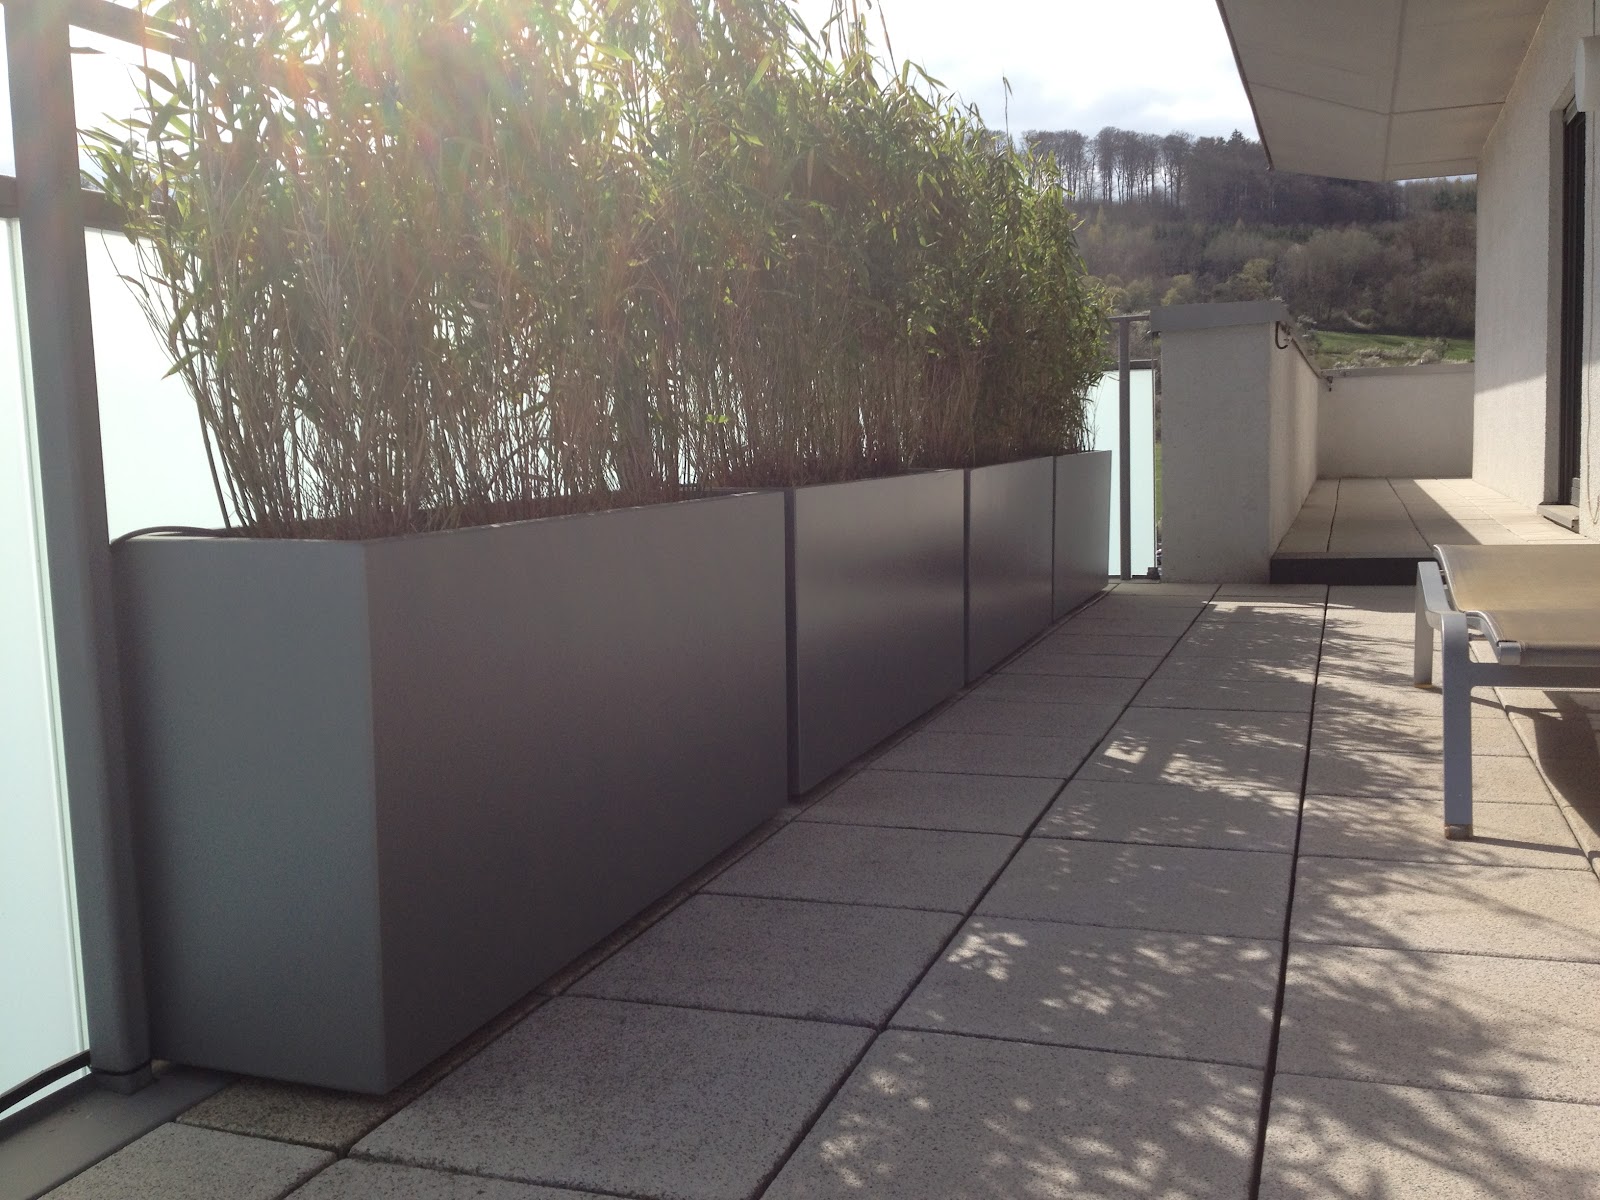 Bacs IMAGE'IN Bambous en brise vue - Aménagement terrasse & balcon